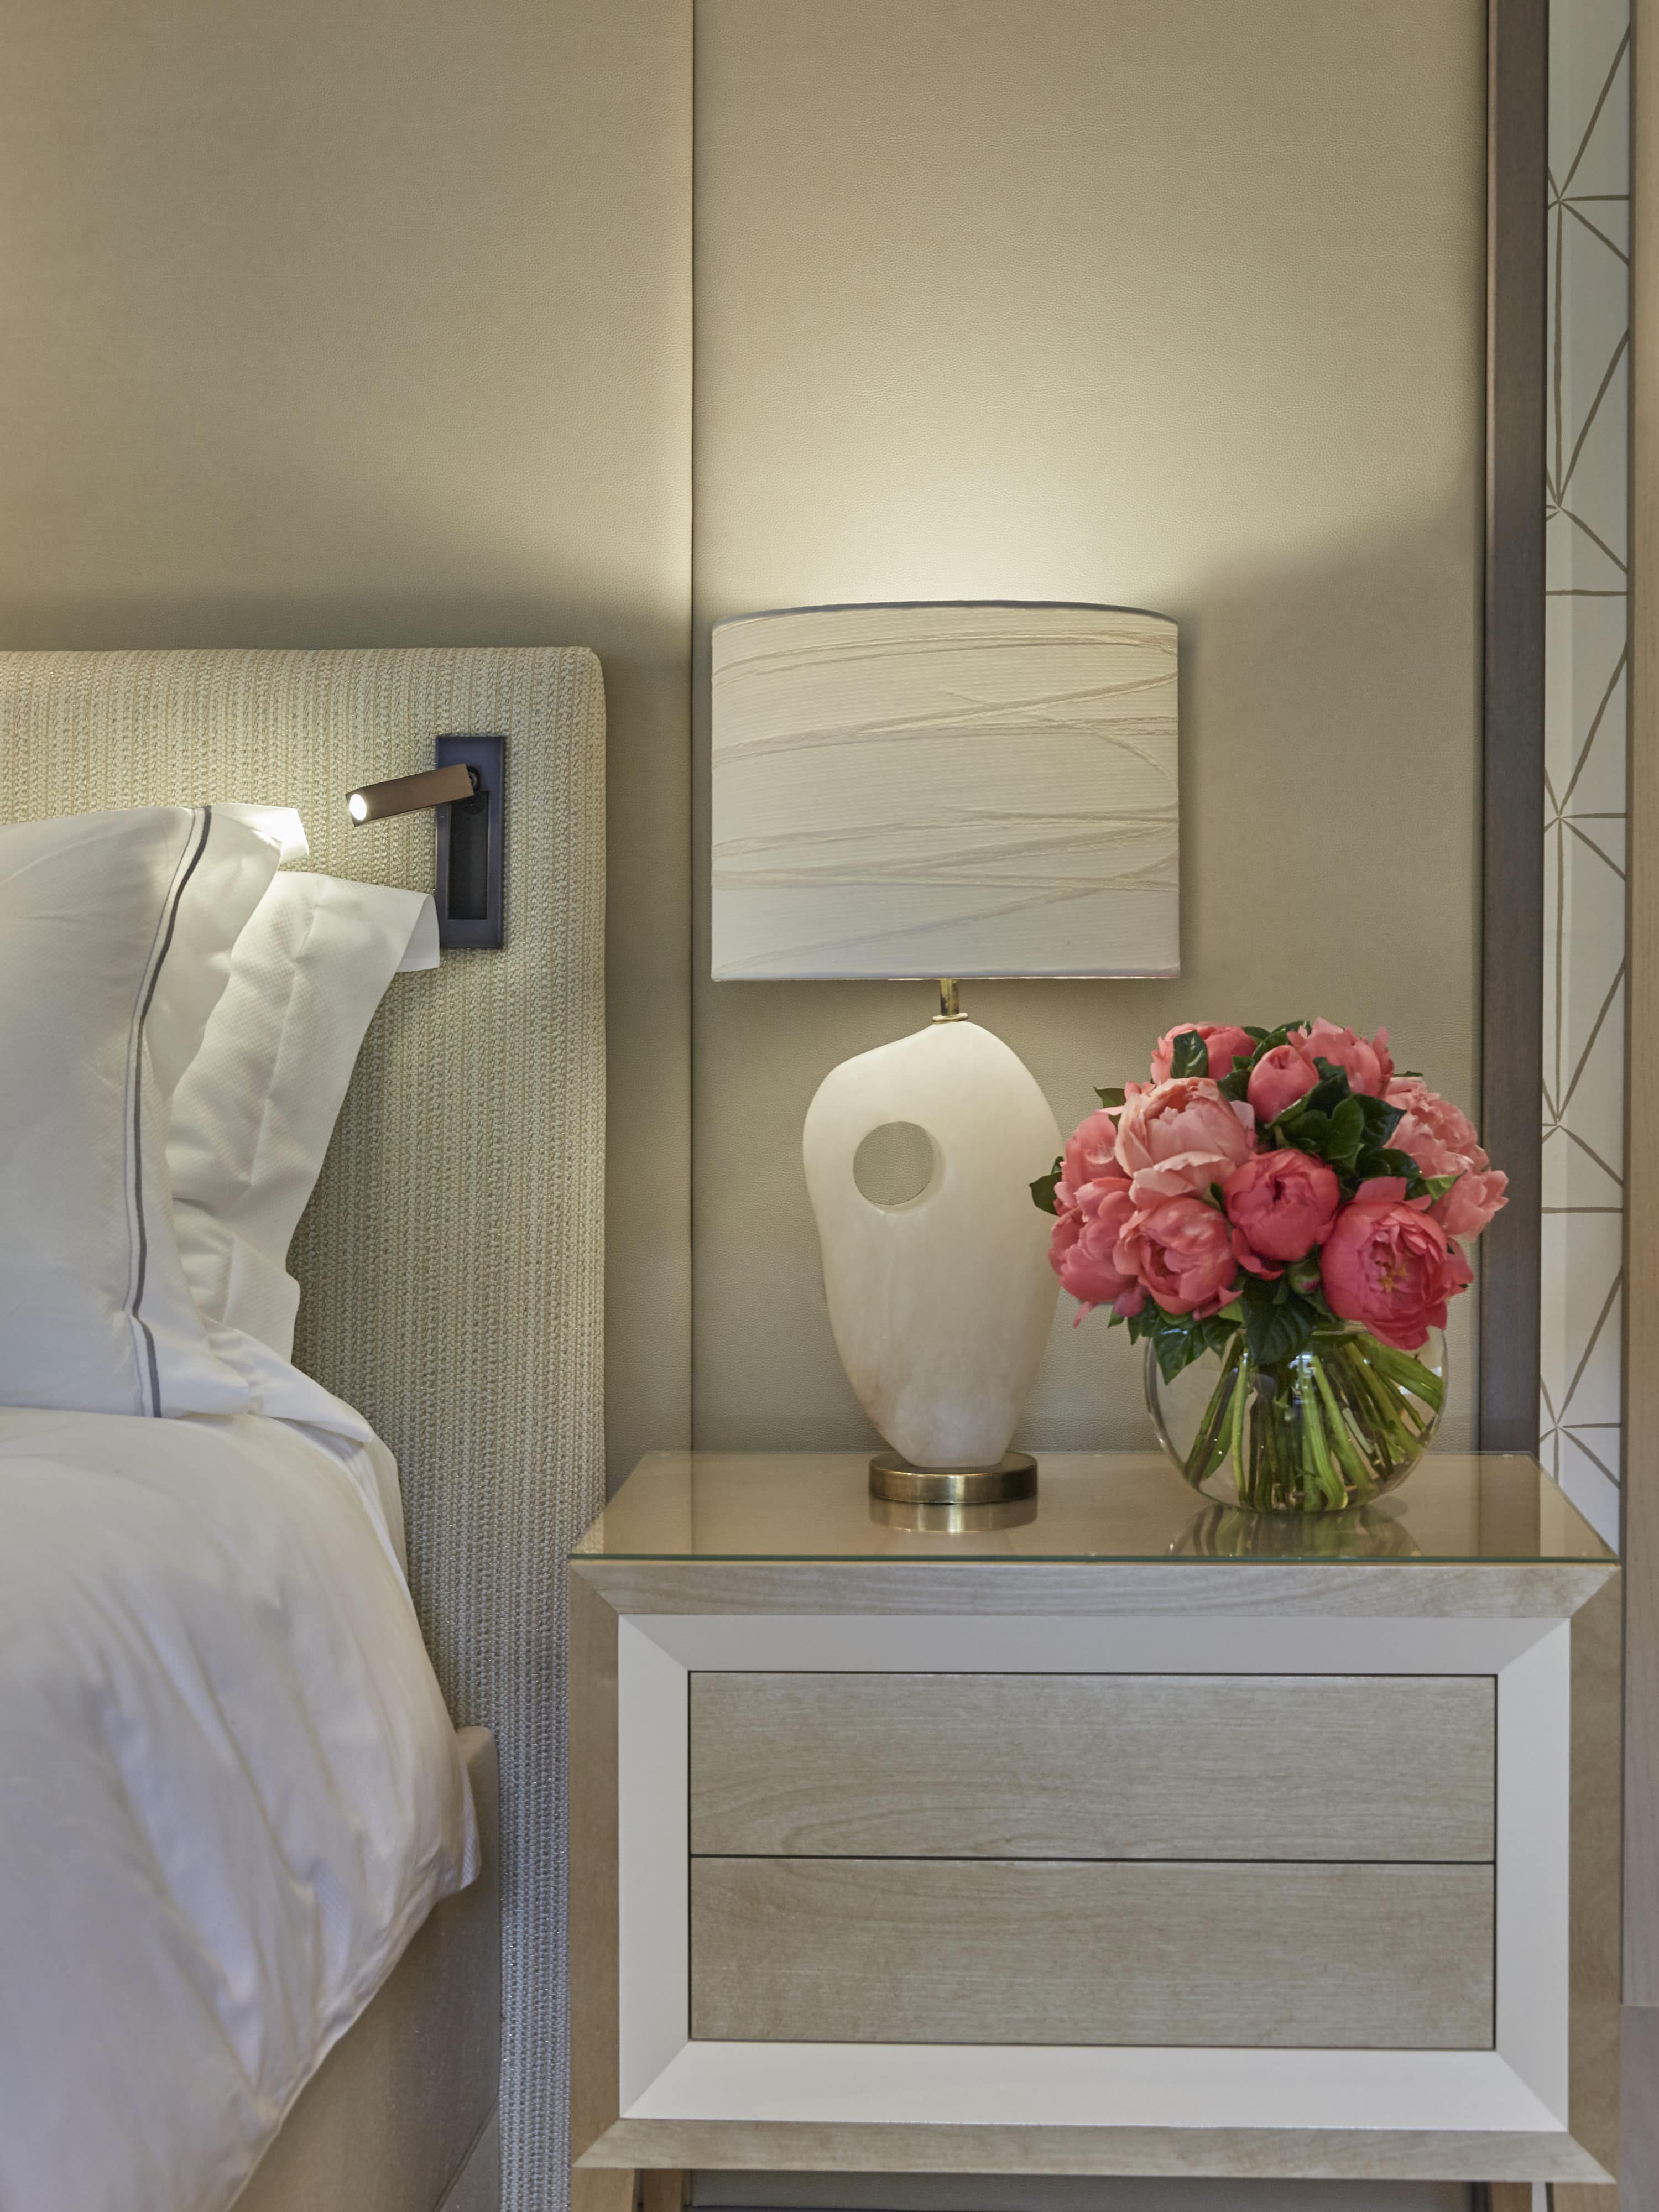 pink flowers on bedside table of modern bedroom interior design